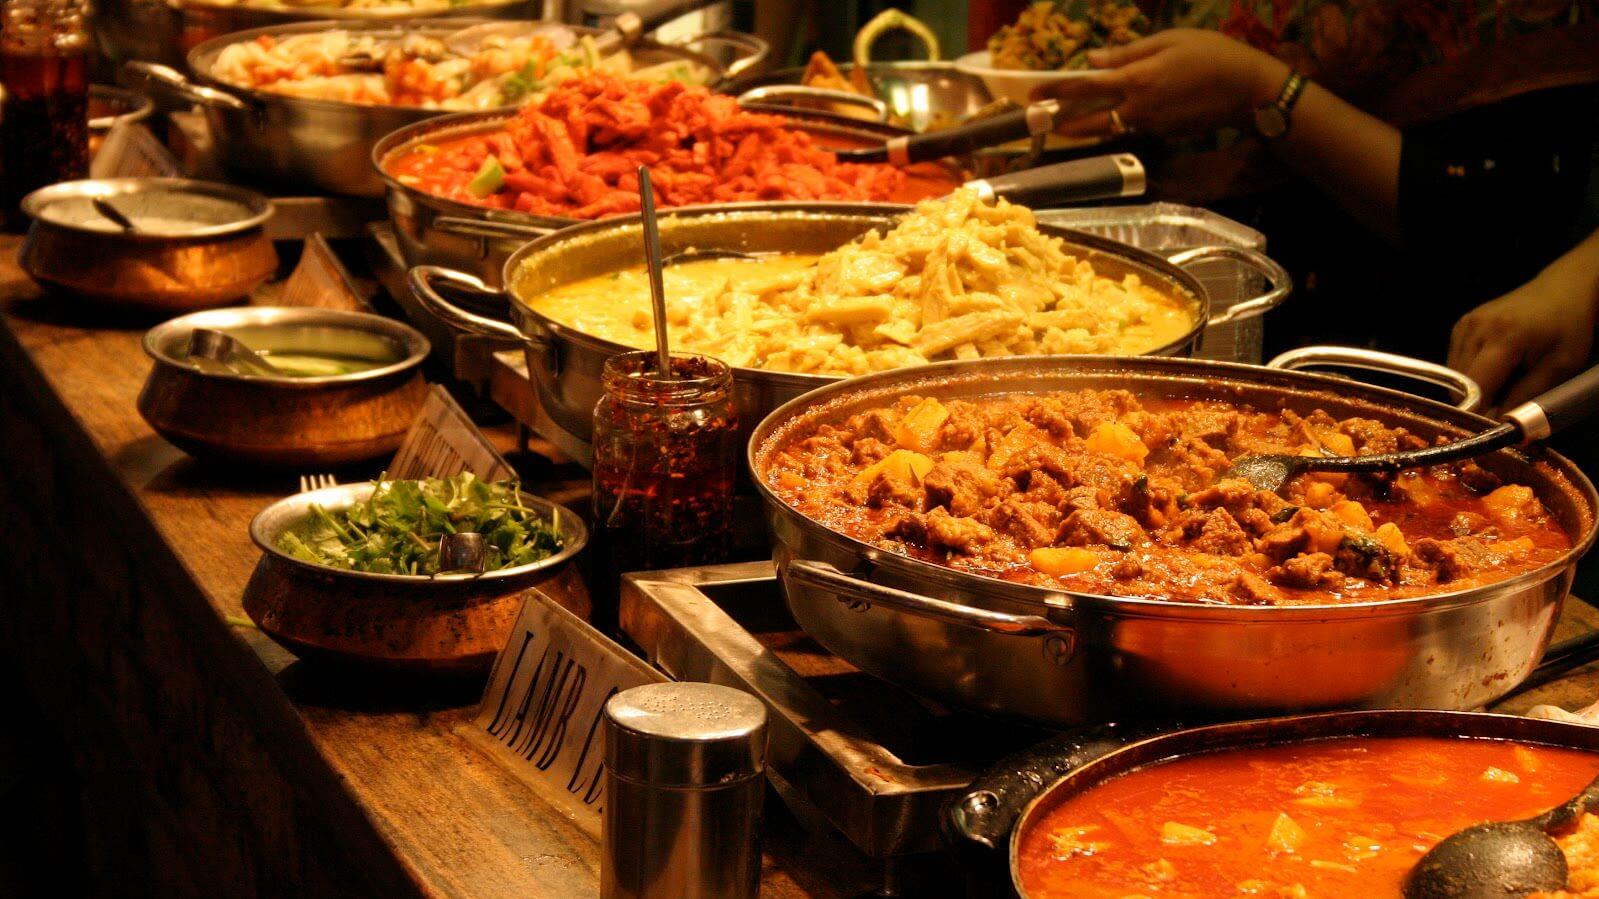 Kabob & Curry/Indian Food                                                                                                                                                                                             